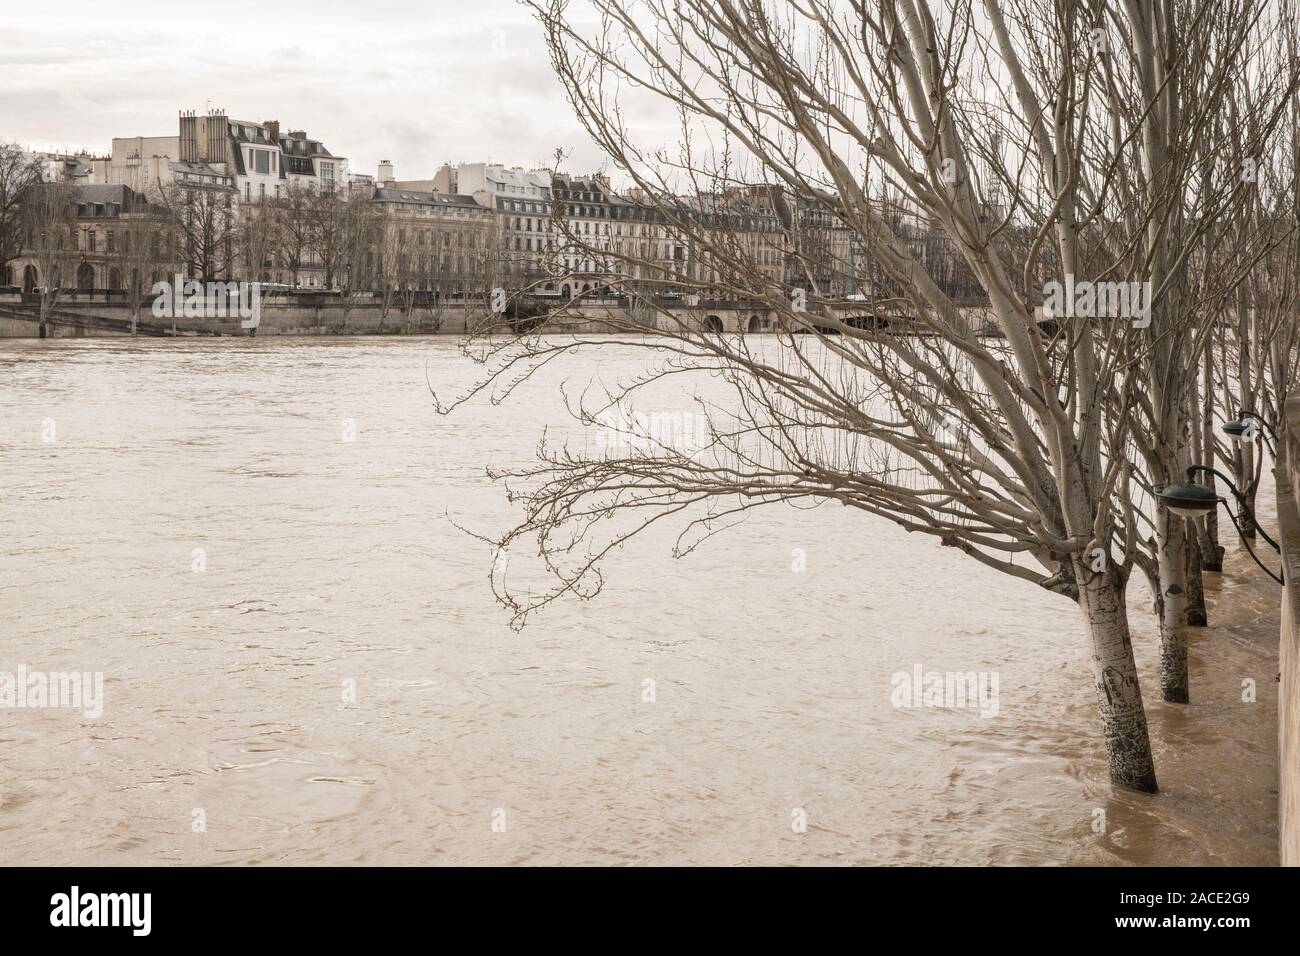 FLOODS IN PARIS Stock Photo